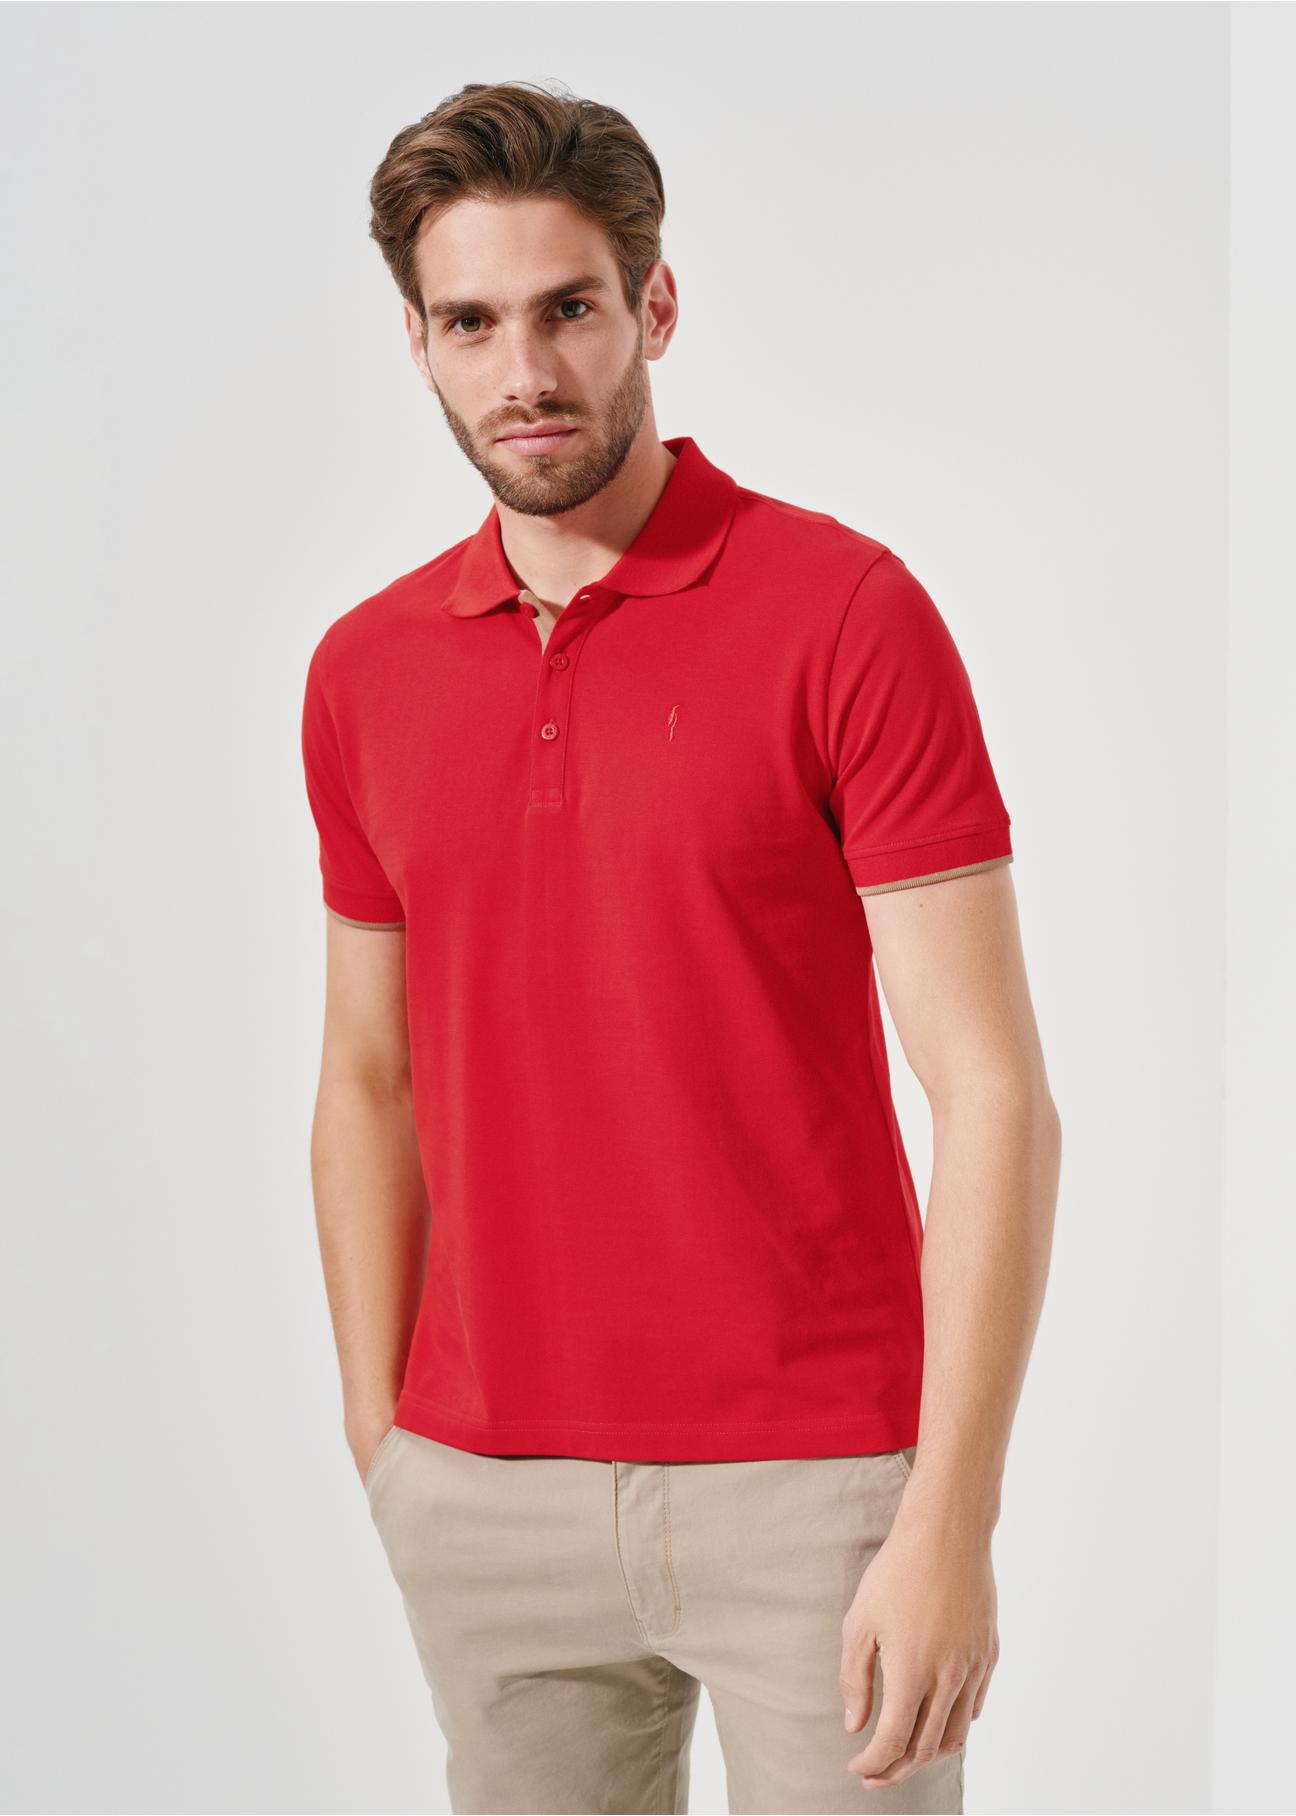 Czerwona koszulka polo męska POLMT-0045A-40(W24)